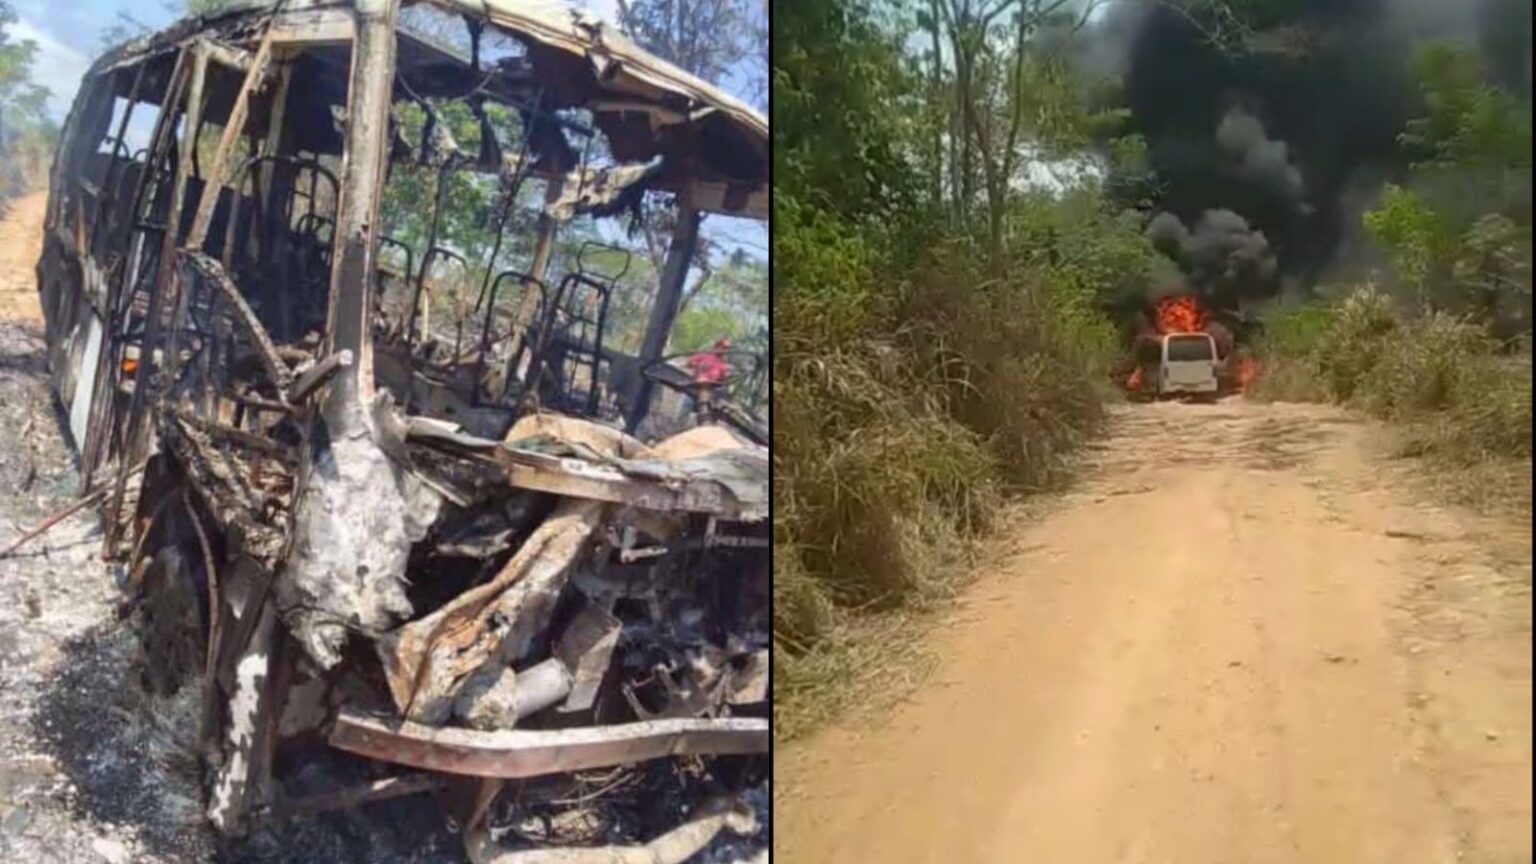 Vídeo: van escolar fica destruída após pegar fogo em Itupiranga